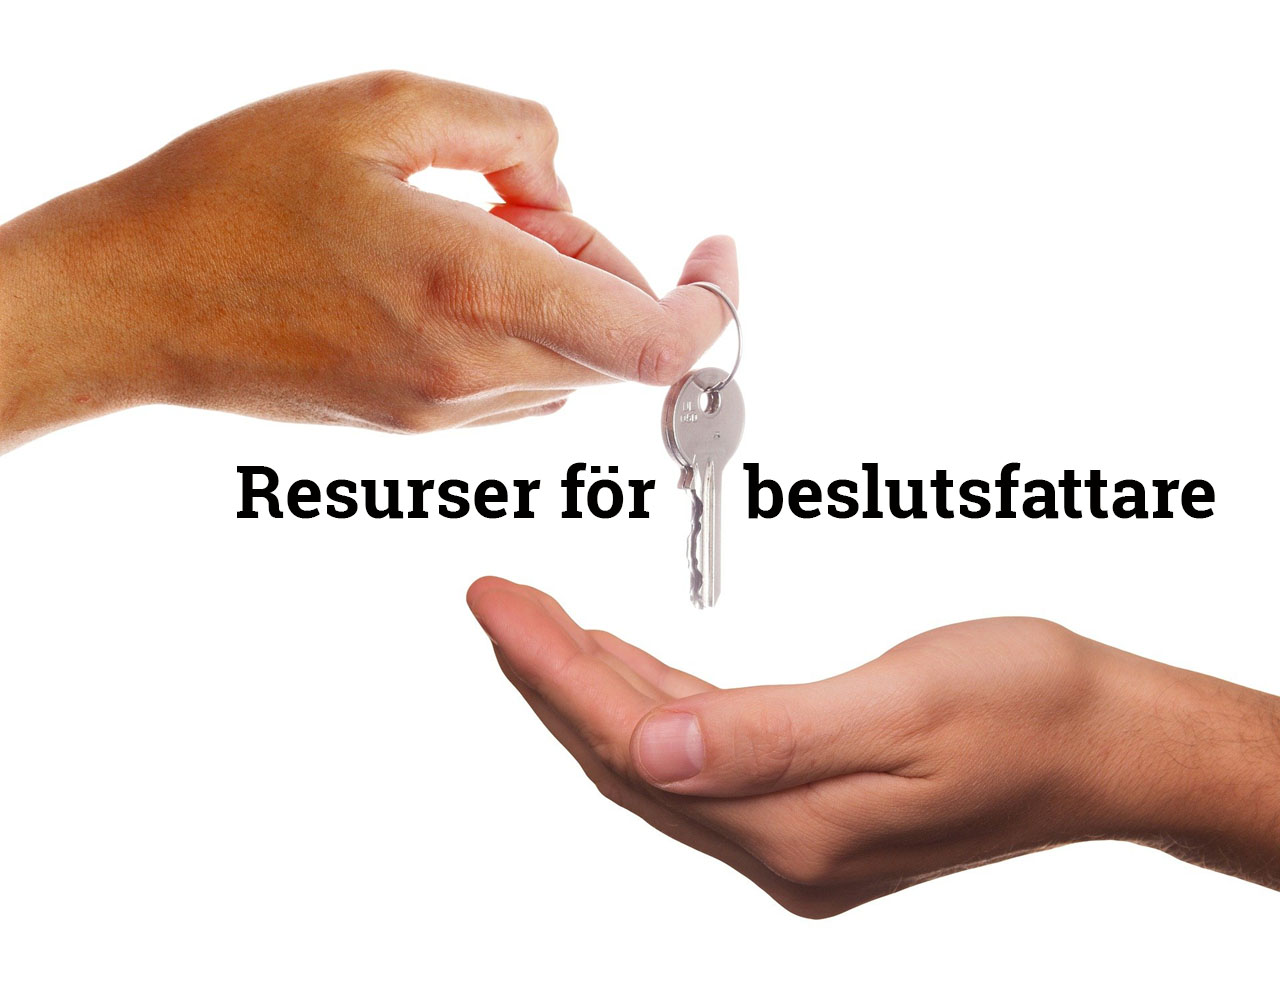 Händer som överlämnar två nycklar med rubriken, "Resurser för beslutsfattare".